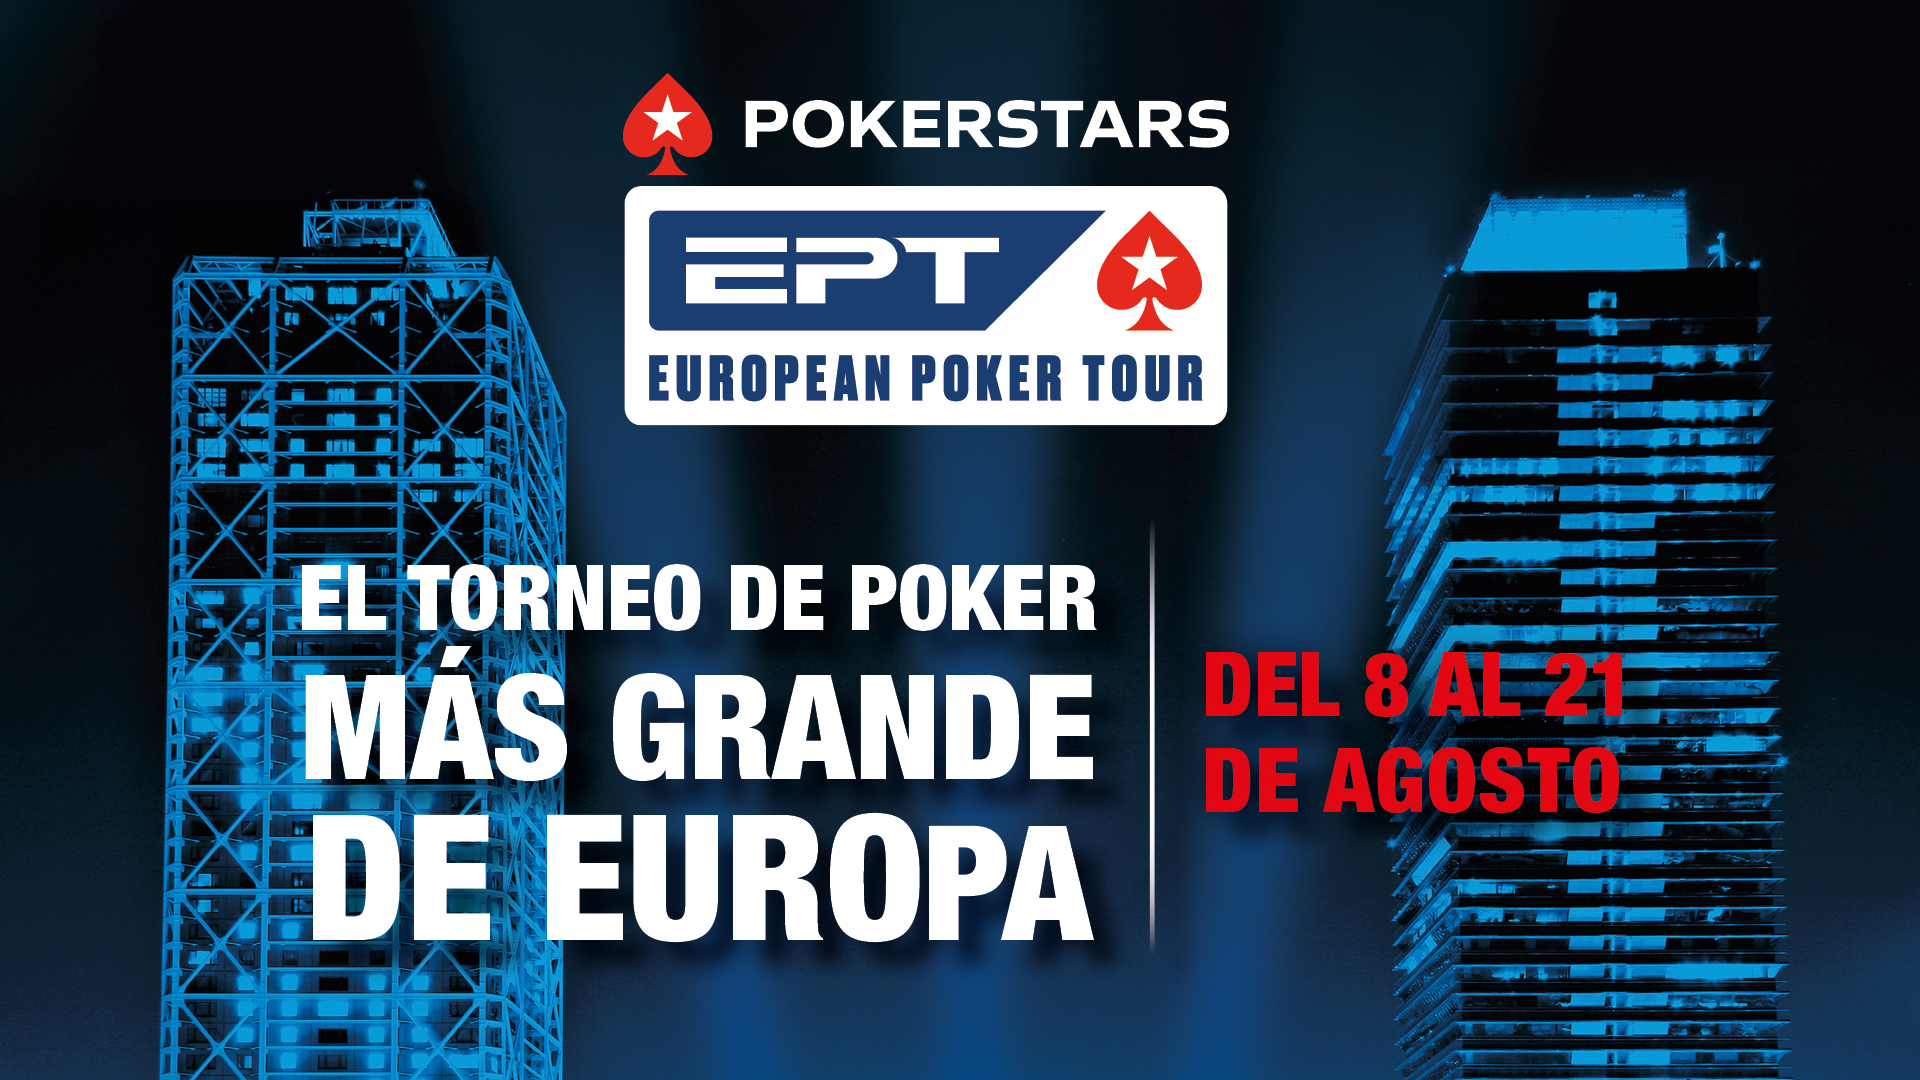 Casino Barcelona volverá a convertirse en la  capital mundial del poker con el European Poker Tour y el CEP de la mano de Pokerstars